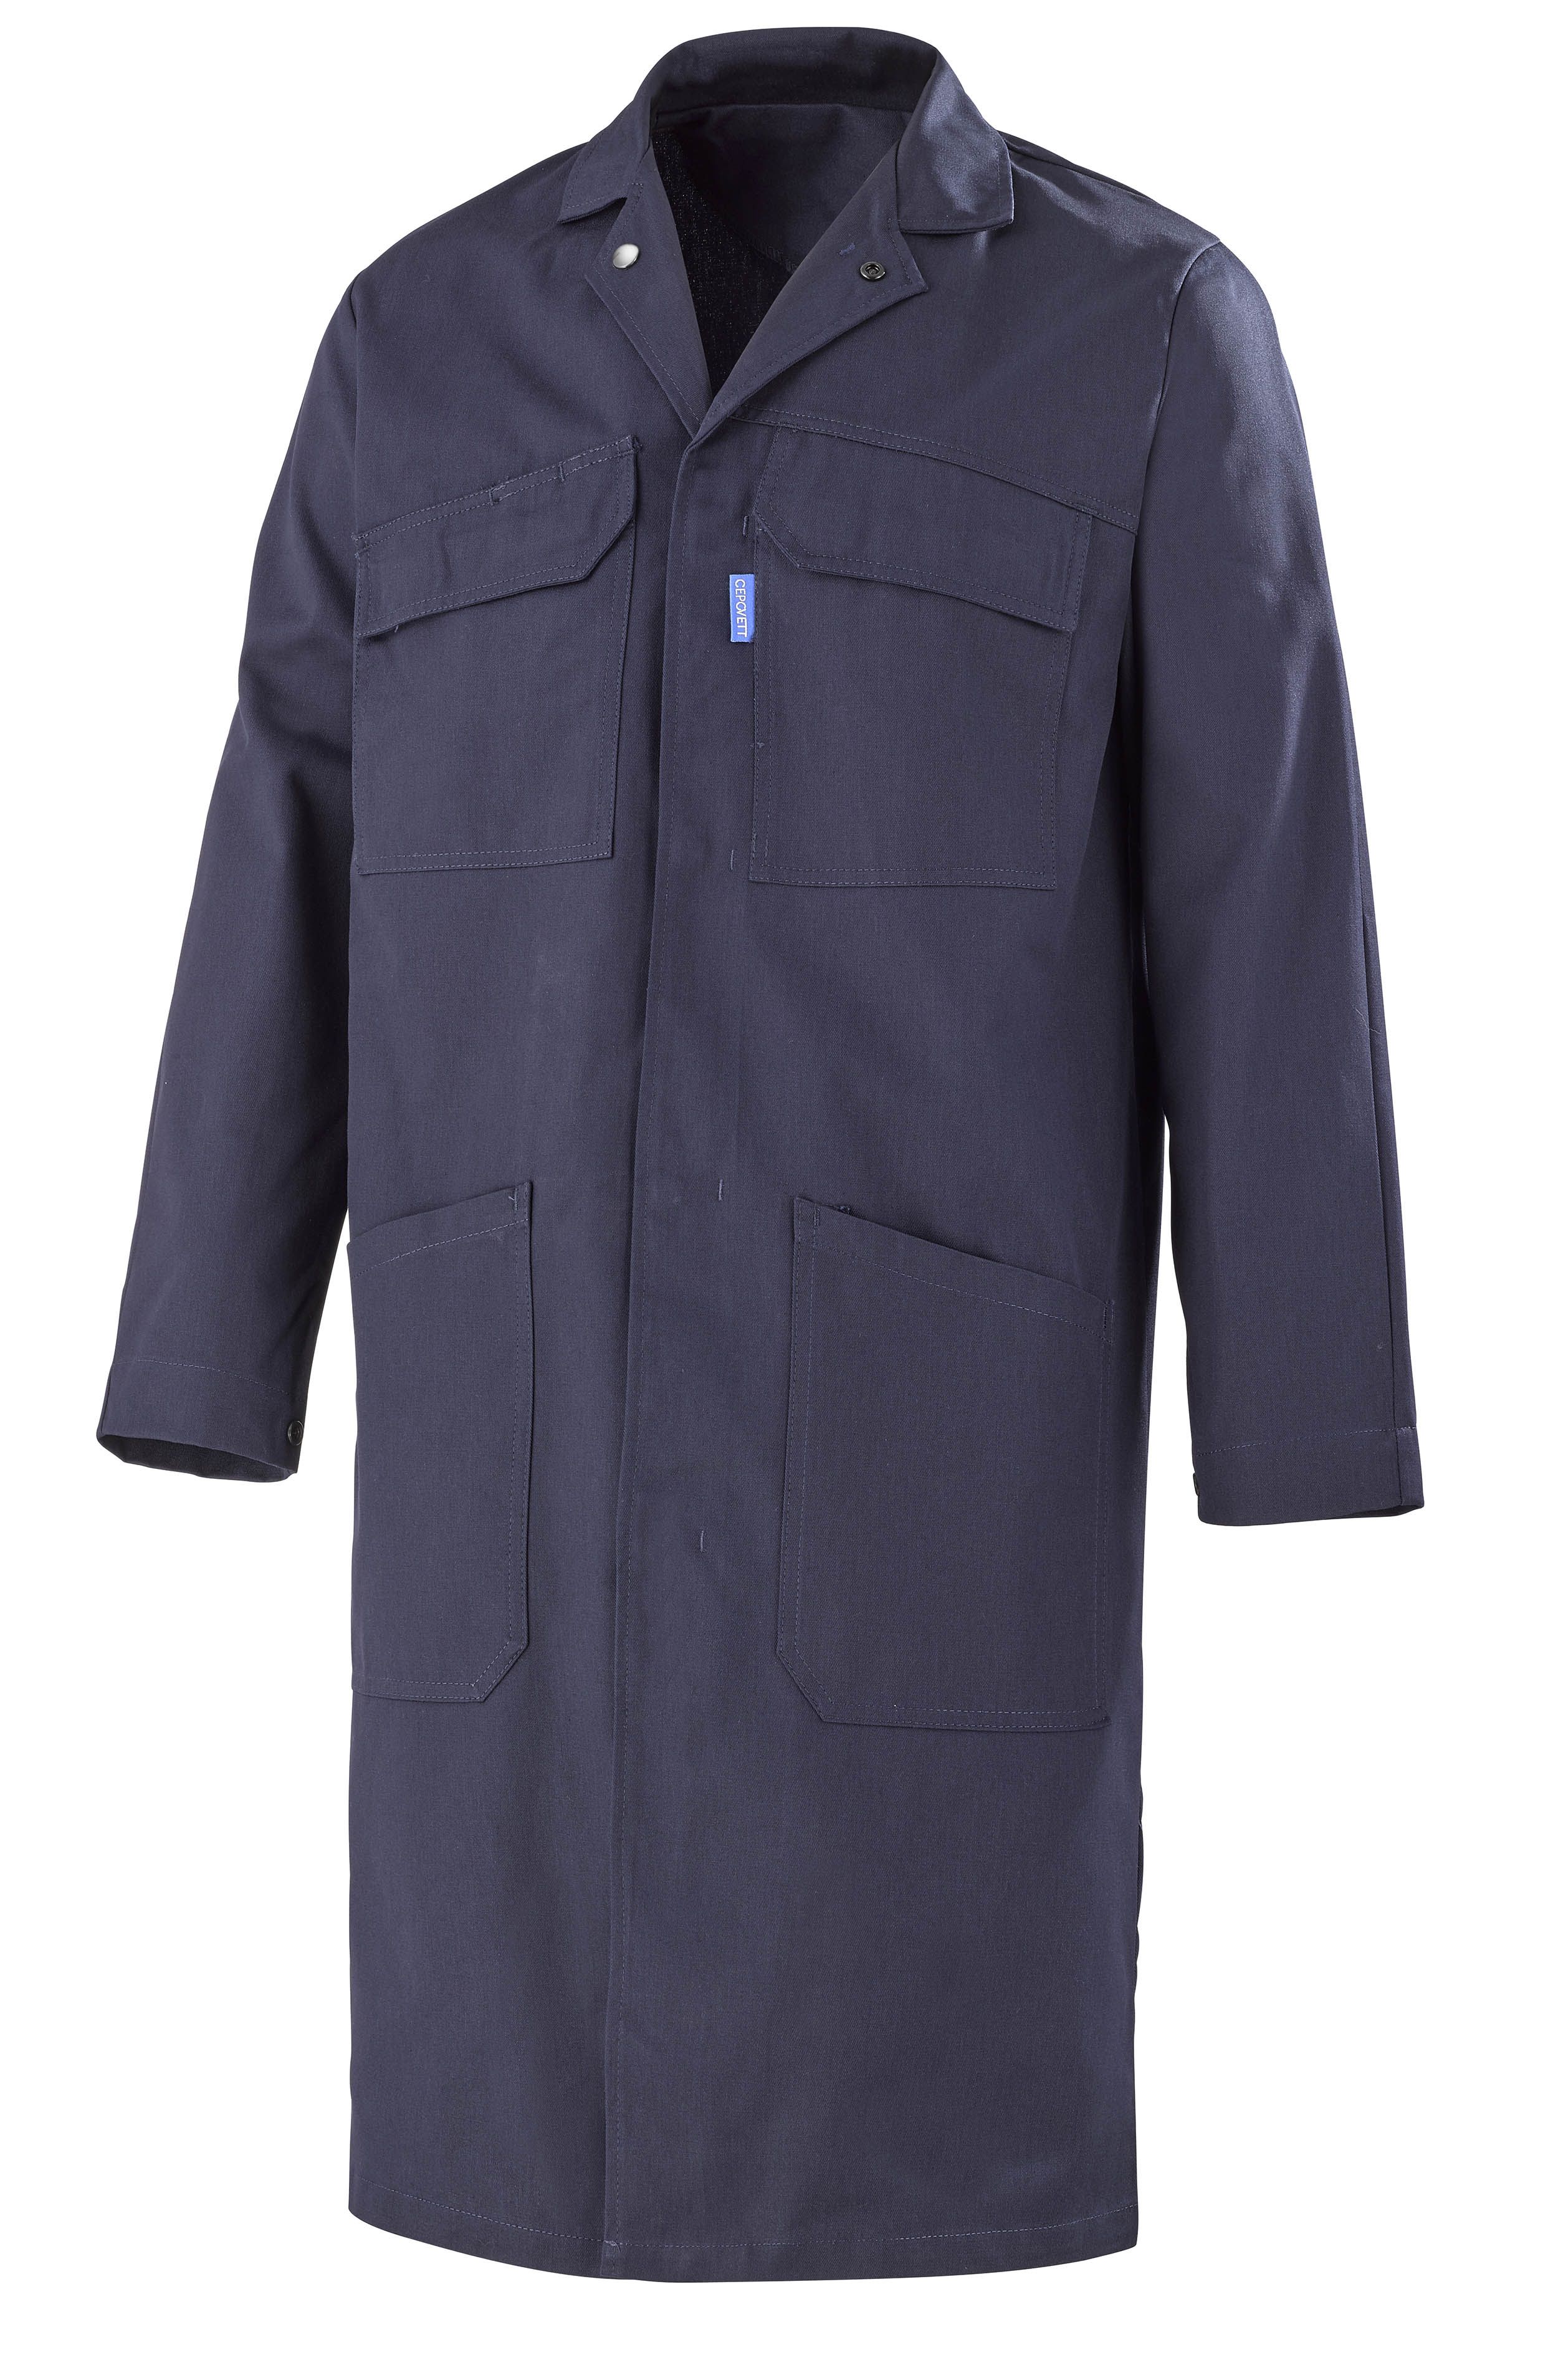 Blouse de travail Cepovett Safety, Homme, Bleu foncé, taille XXL, Réutilisable, Coton, polyester